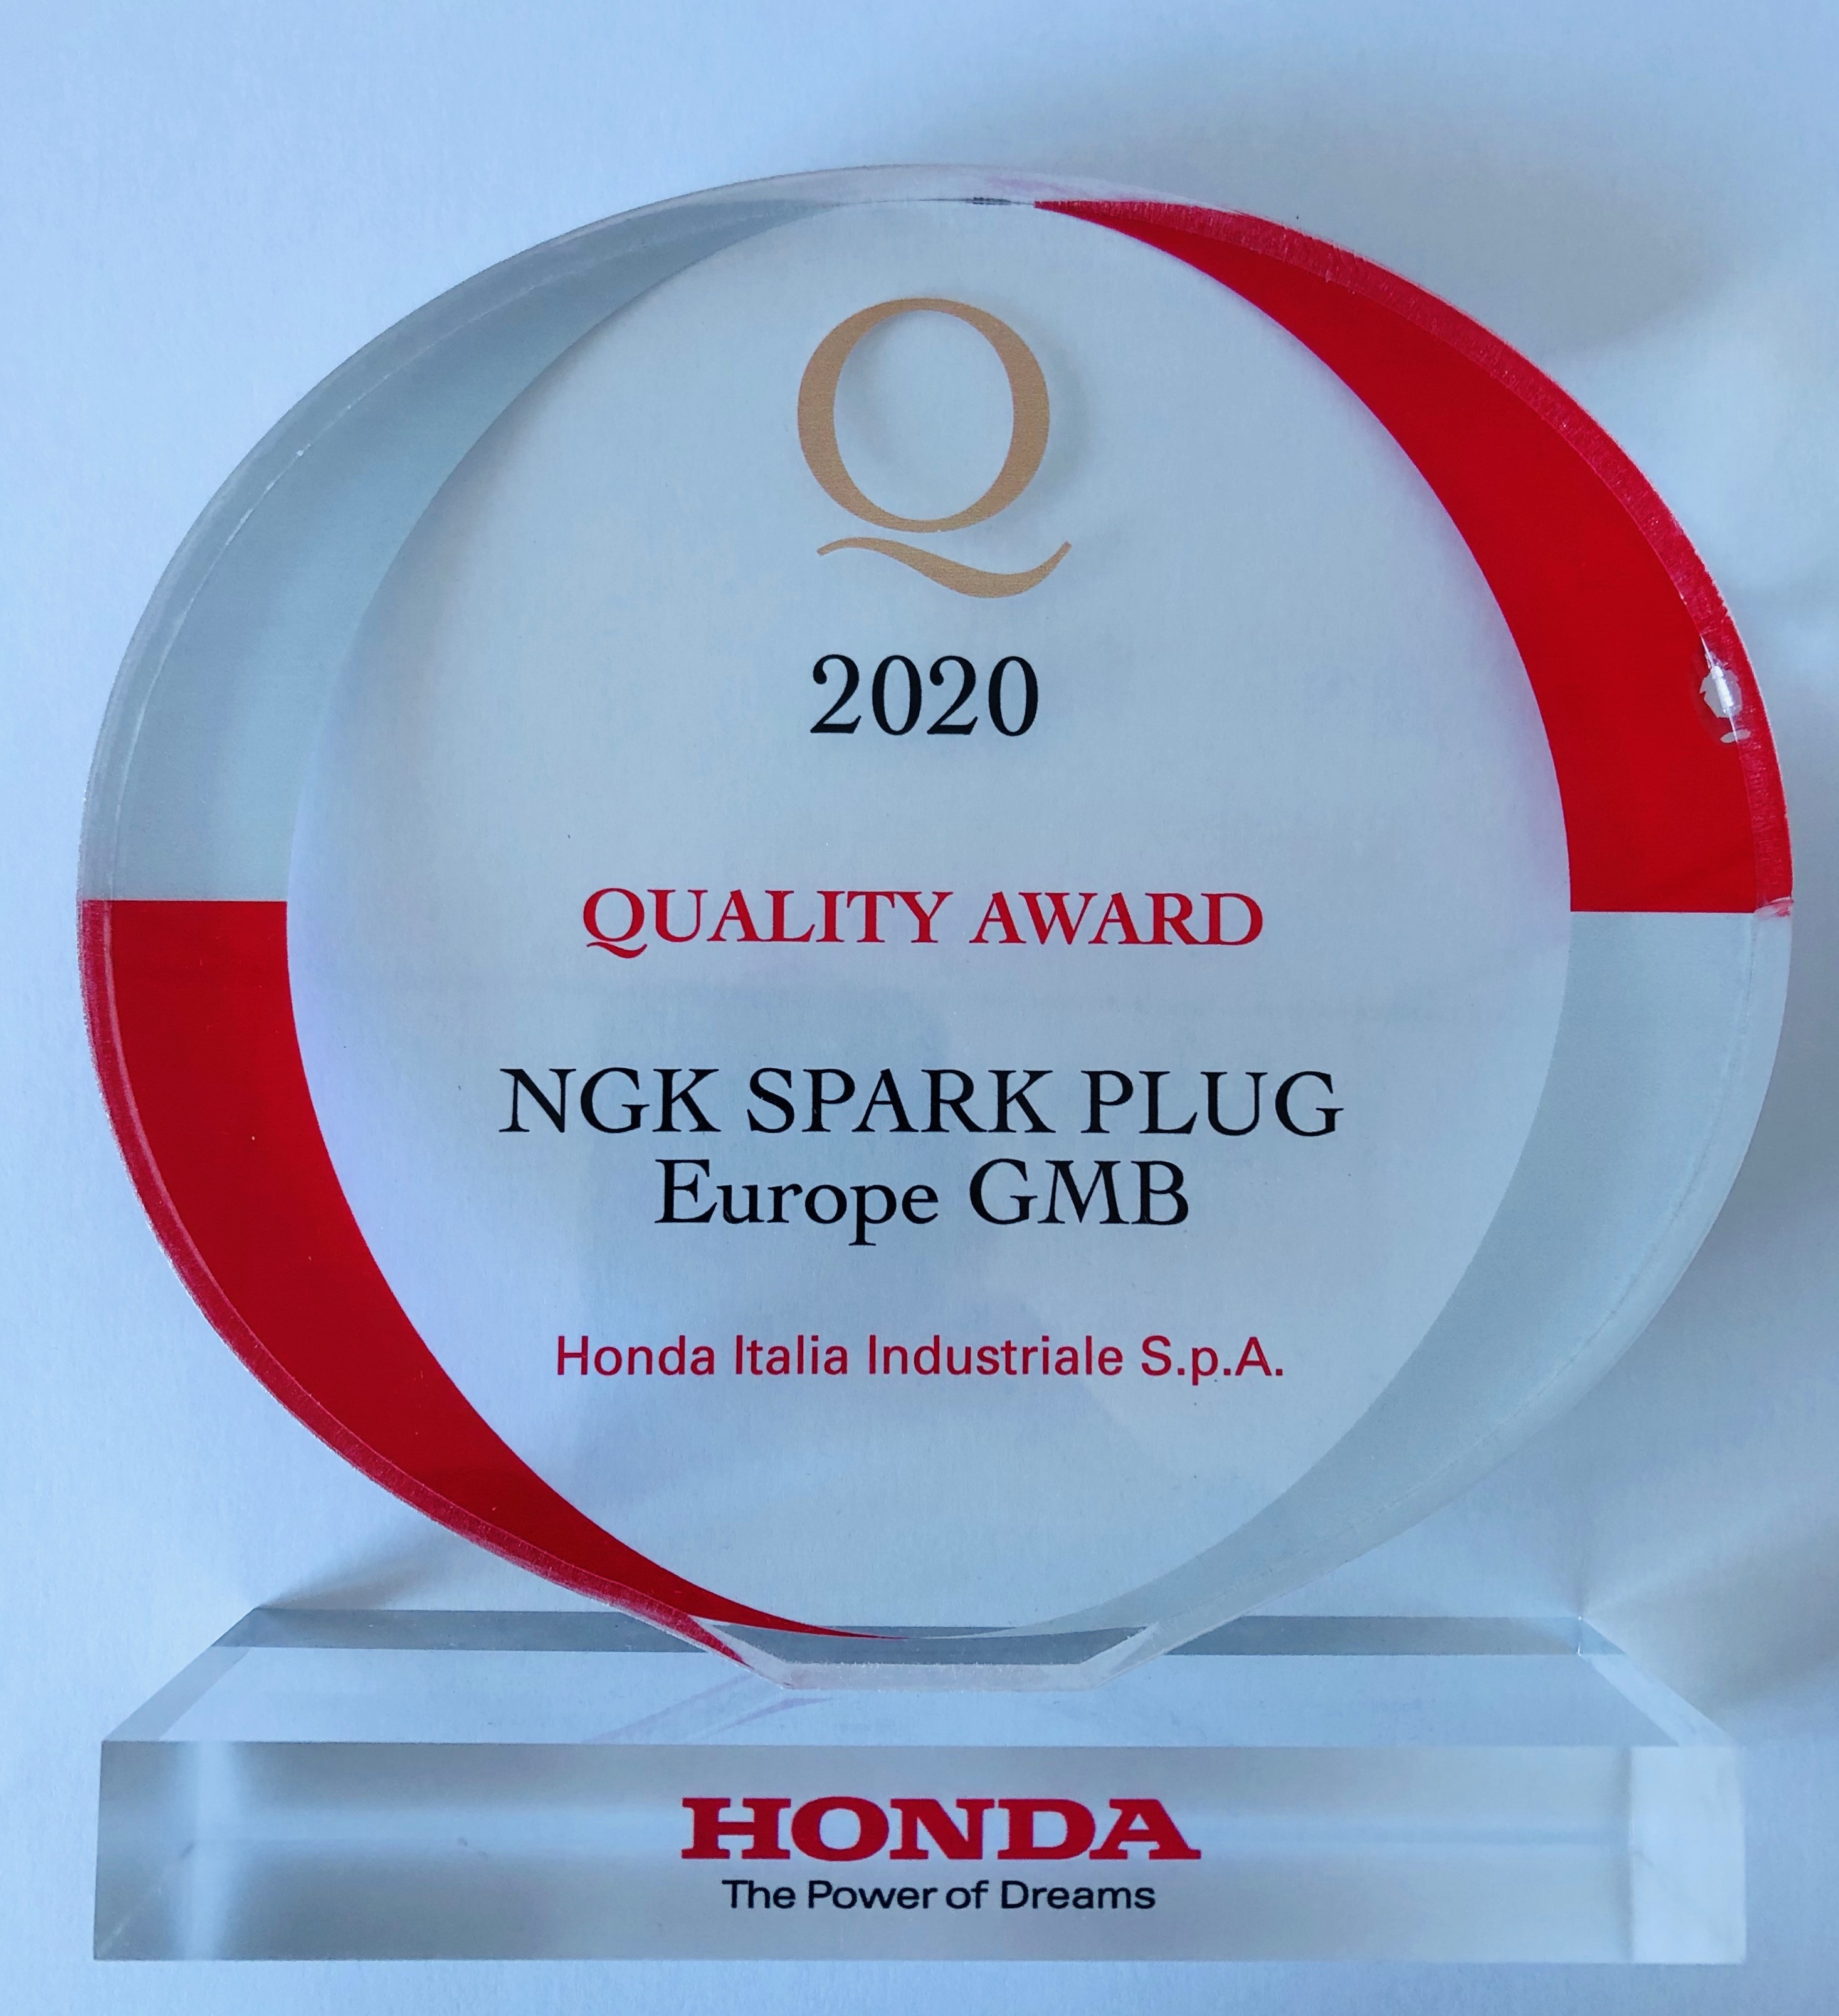 NGK premiata da Honda Italia con il Quality Award 2020 - PartsWeb